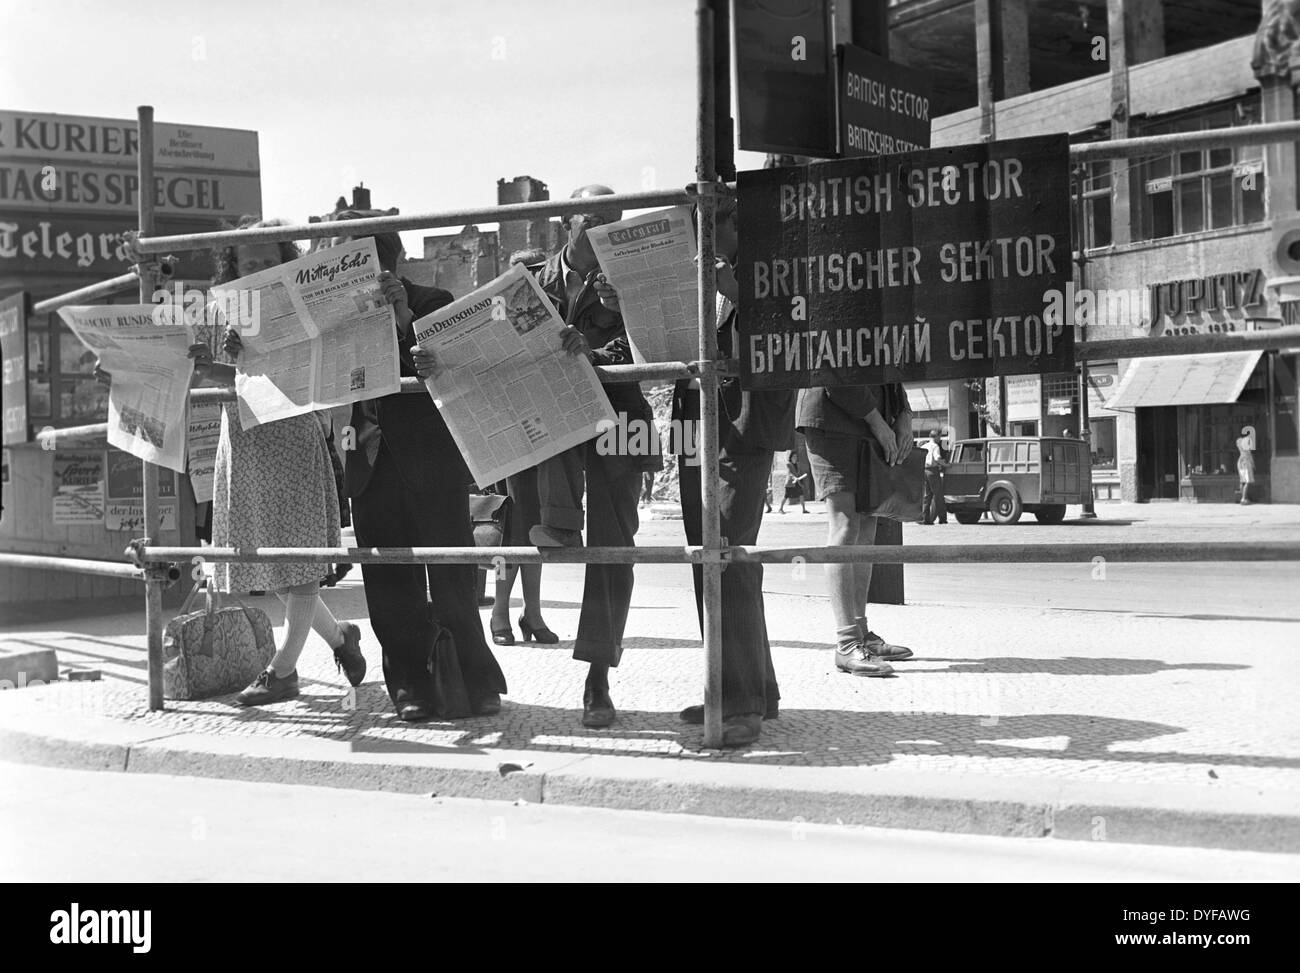 Ende der Berlin-Blockade - West-Berliner Bürger lesen über die angekündigte Aufhebung der Berlin-Blockade in der daily News, an der Grenze zwischen der britischen und sowjetischen Sektor am Potsdamer Platz. Stockfoto